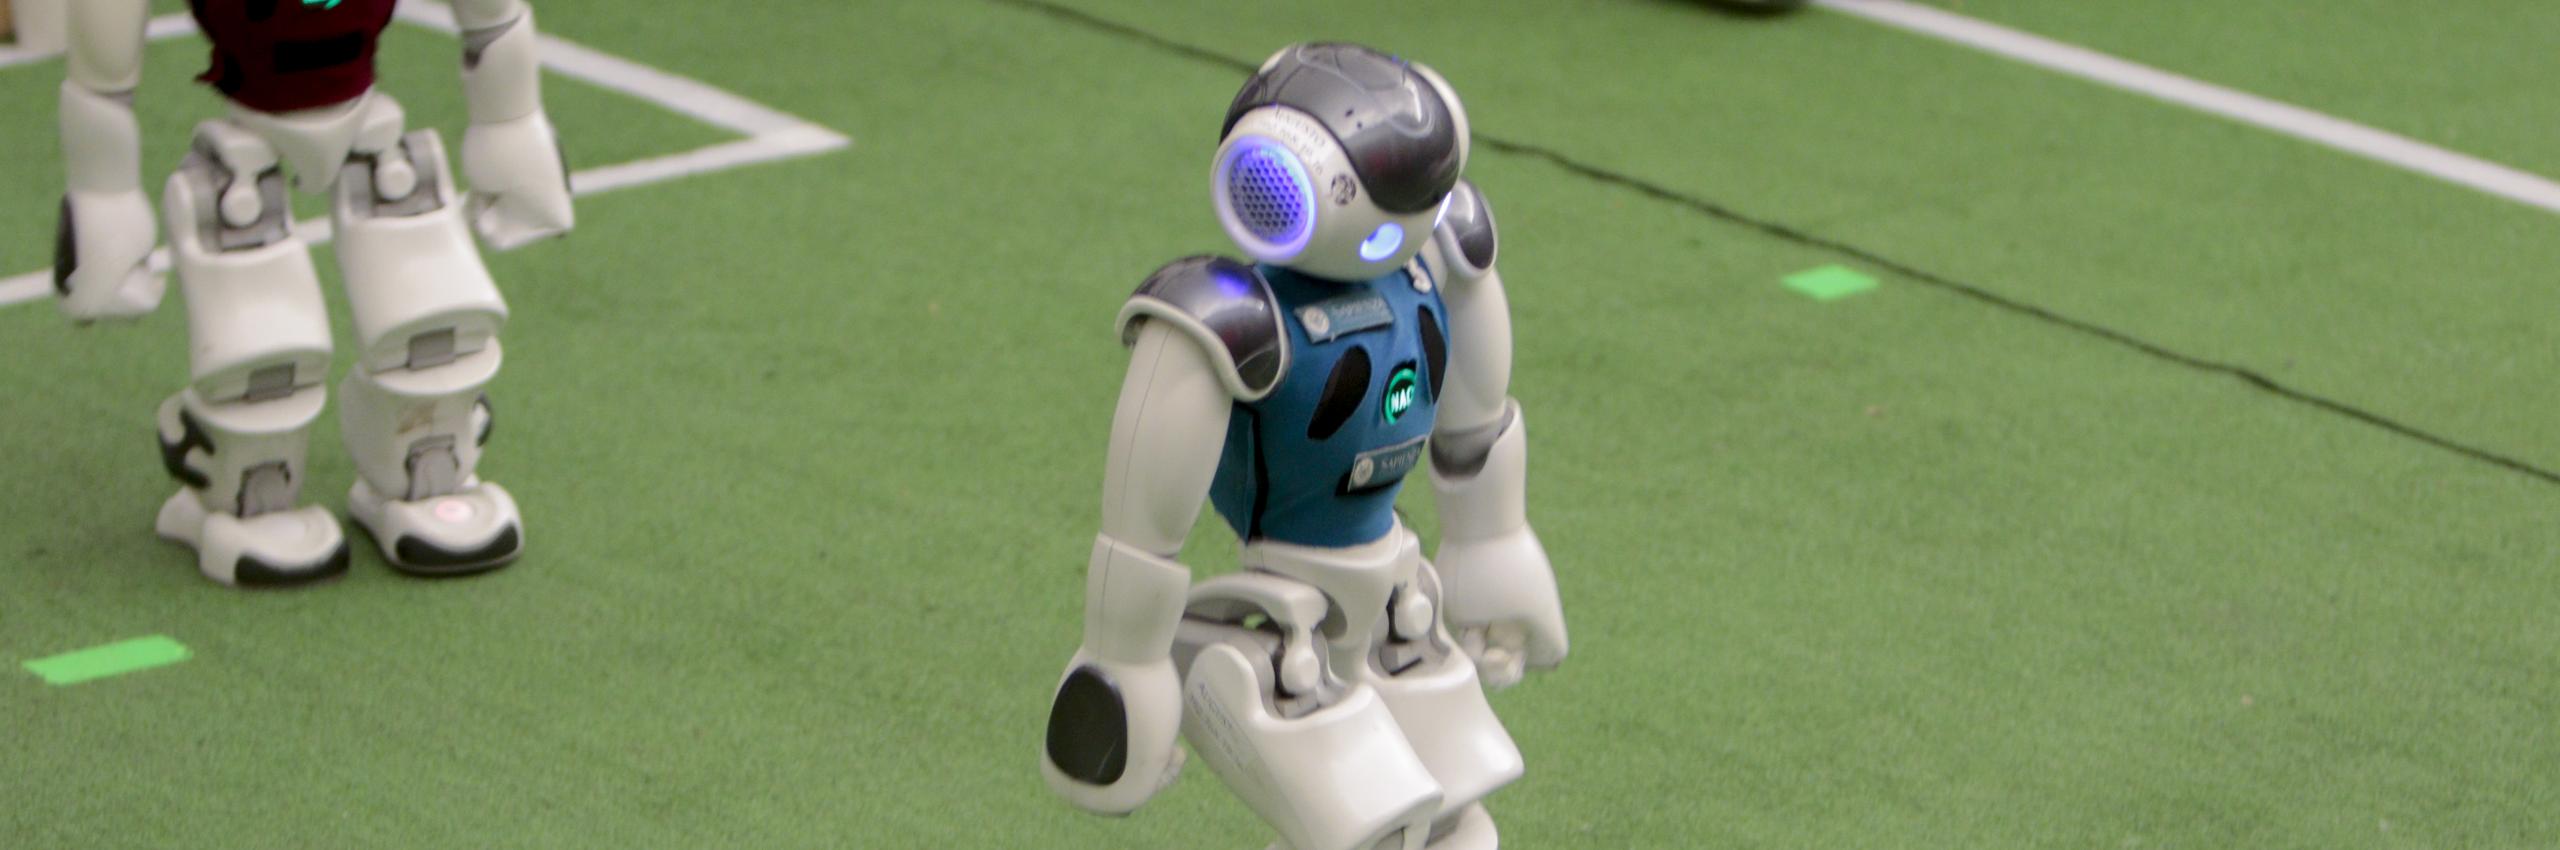 I robot Nao a RomeCup